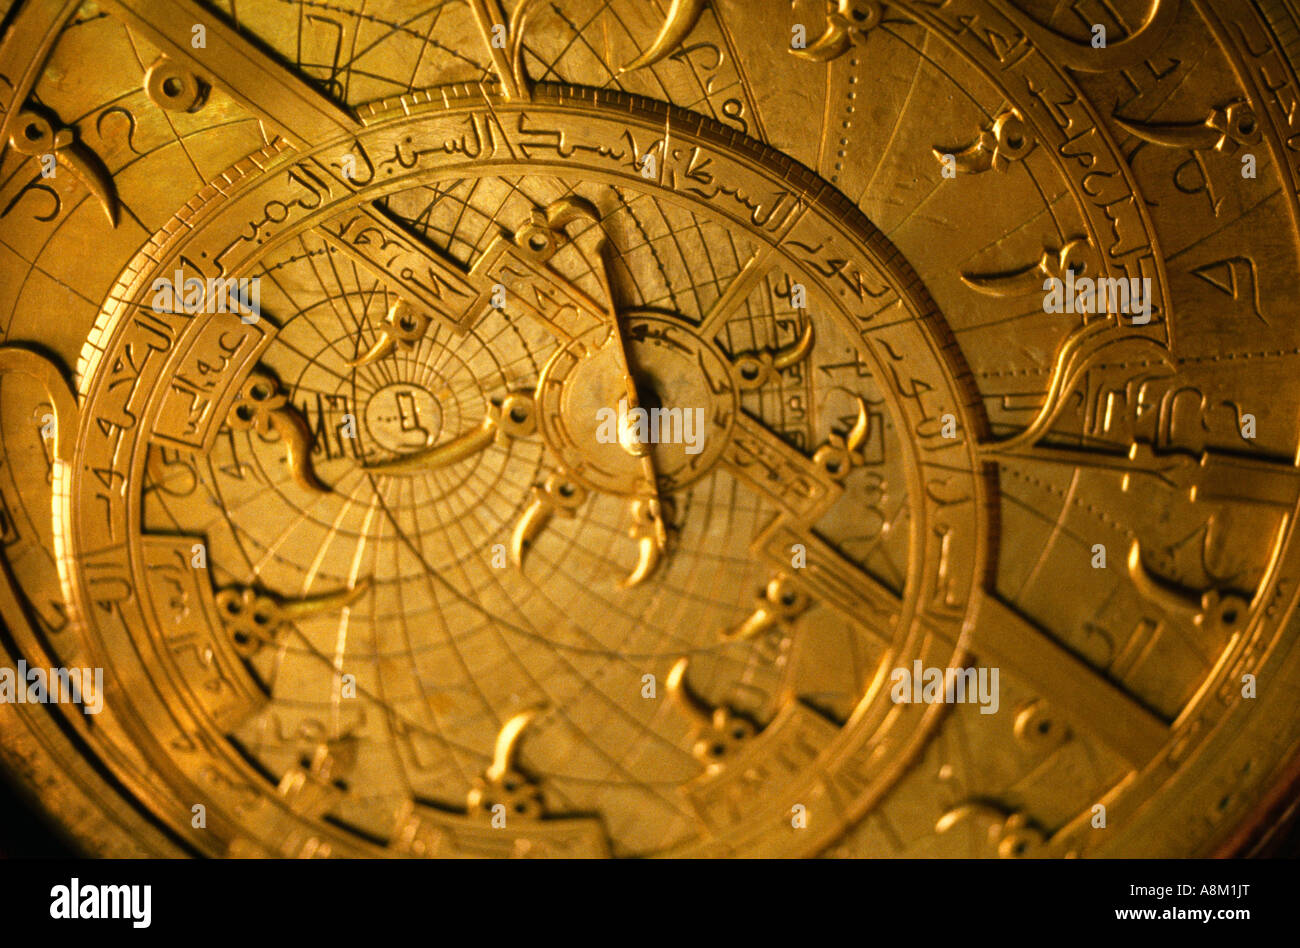 Astrolabium islamischen Navigation Hilfe Detail Stockfoto